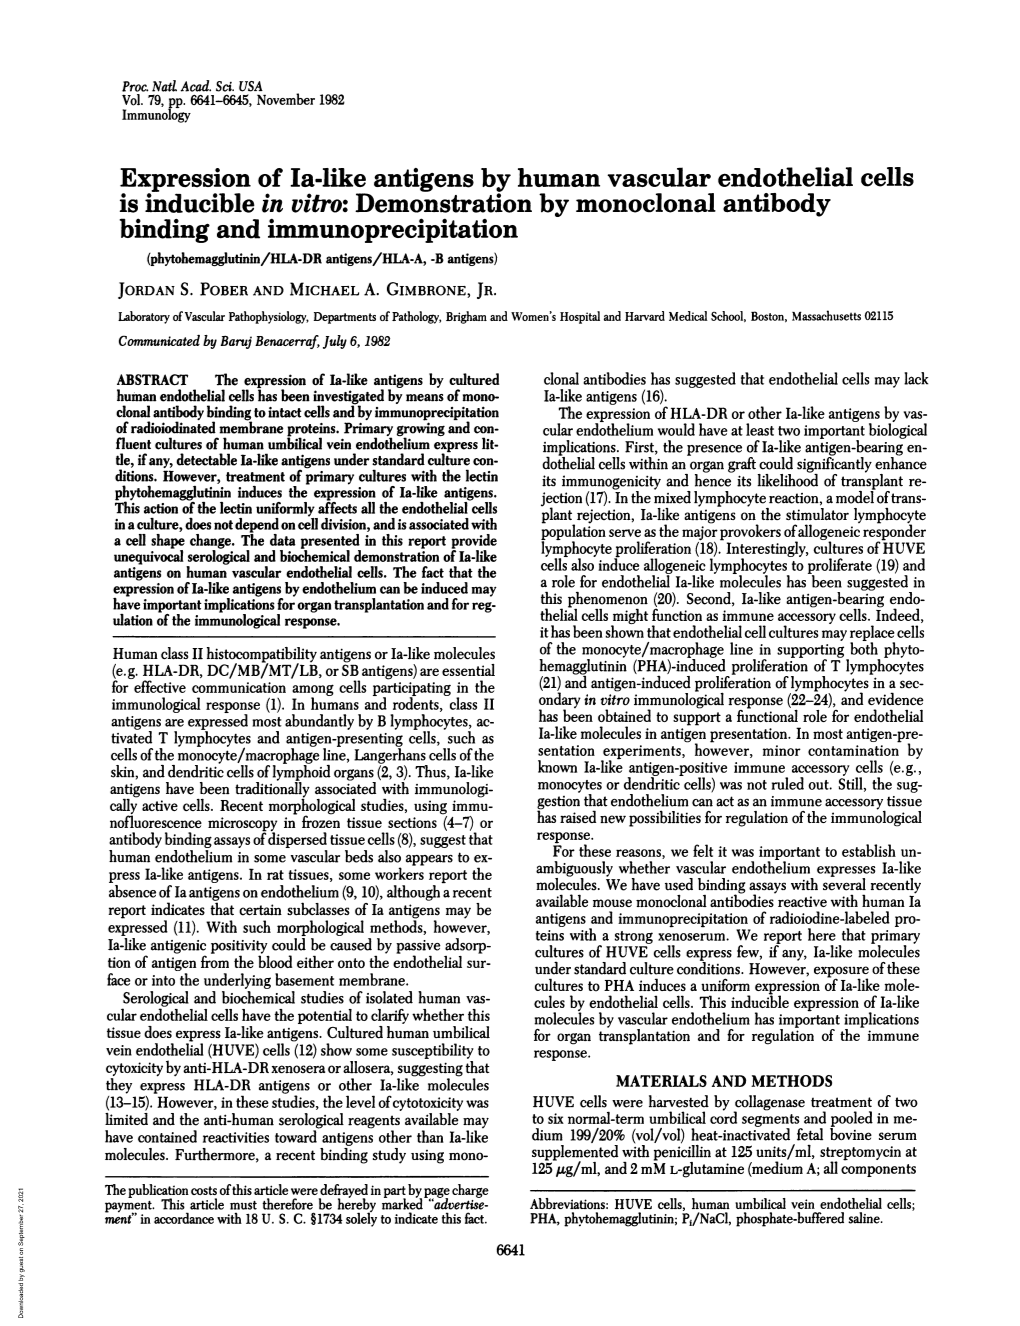 Binding and Immunoprecipitation (Phytohemagglutinin/HLA-DR Antigens/HLA-A, -B Antigens) JORDAN S